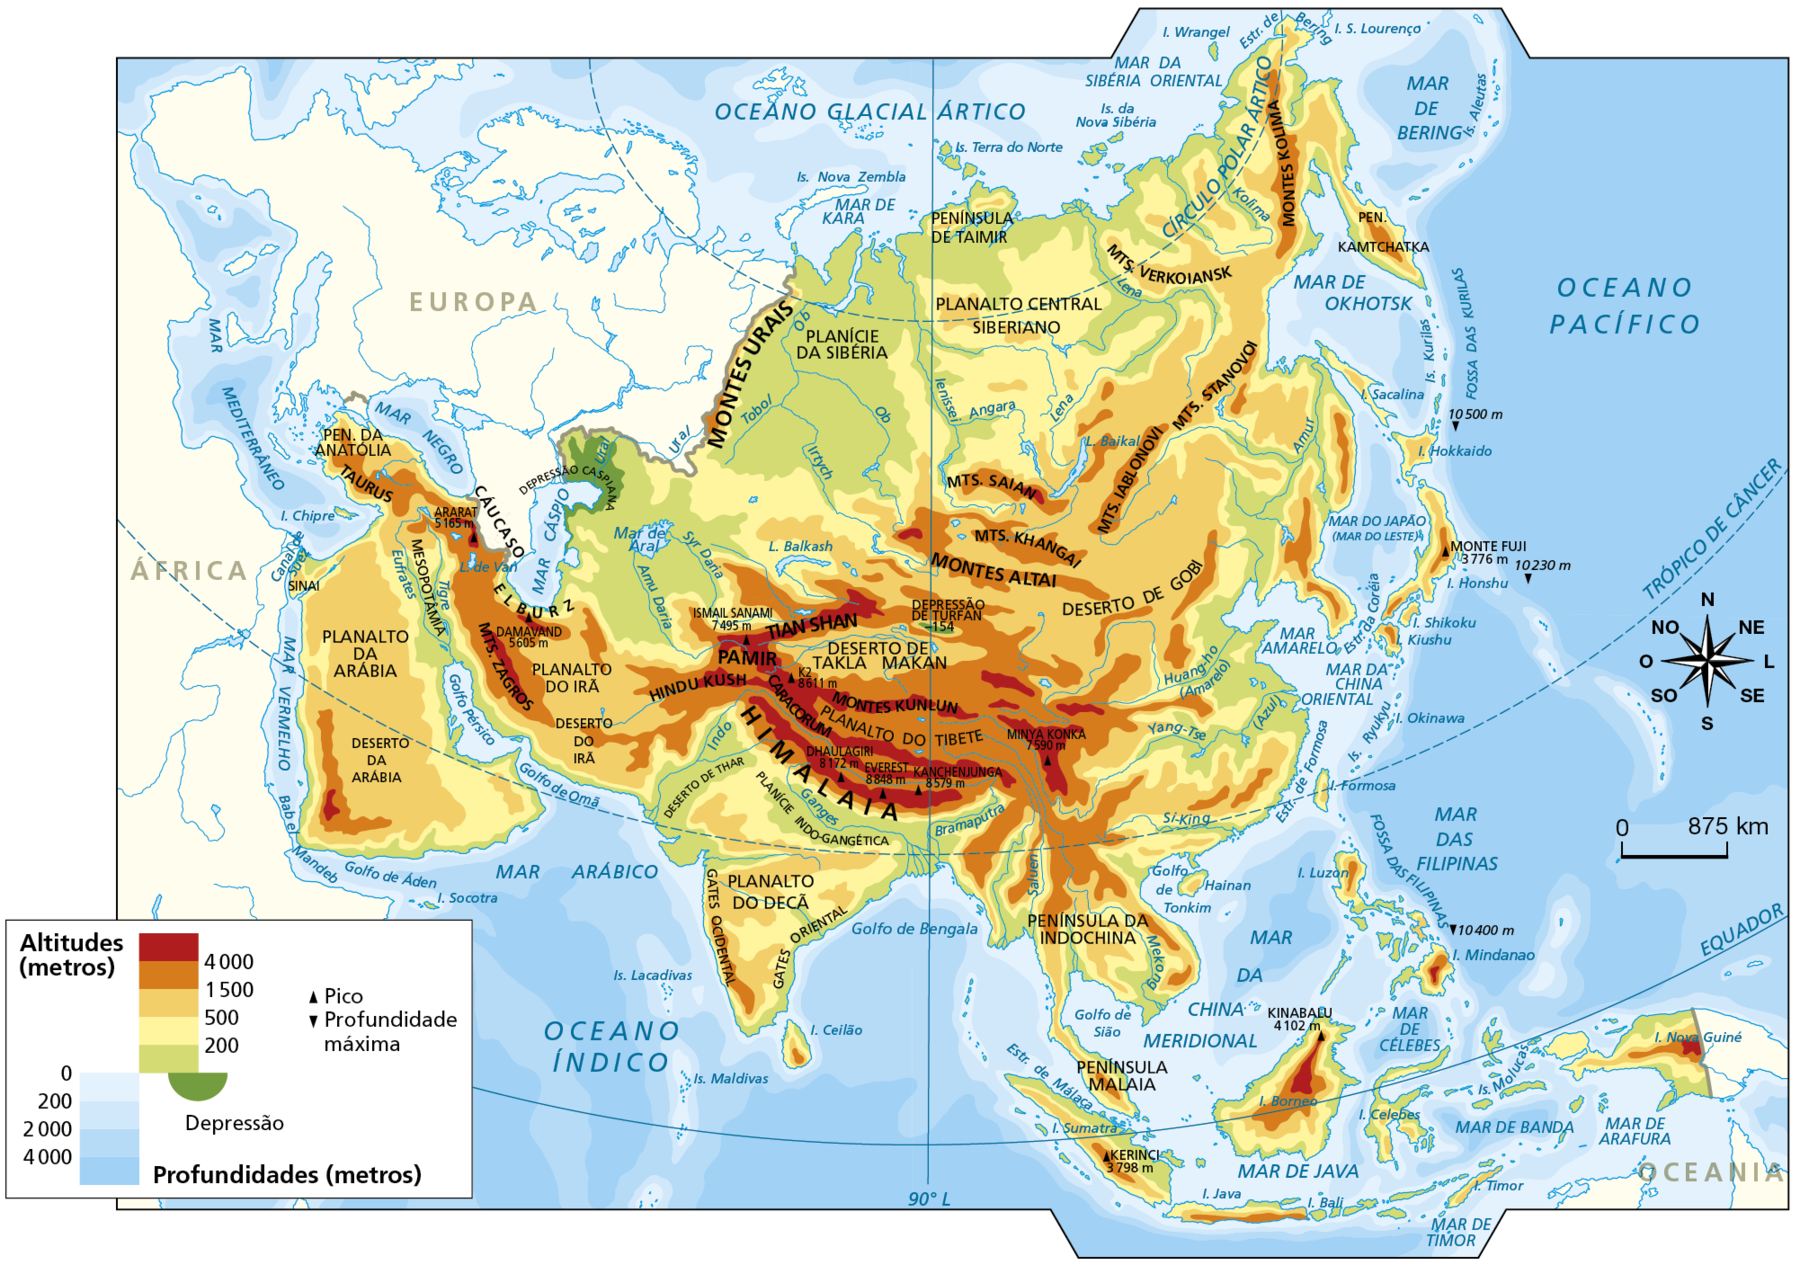 Mapa. Ásia: físico. Mapa representando as altitudes do continente asiático, os picos e as profundidades marítimas, em metros. Altitudes de 4.000 metros concentram-se na porção central do continente, onde estão as formações do Himalaia, Caracorum, Tian Shan, Pamir, Hindu Kush e Montes Kun Lun. Na porção oeste, estão Elburz e Montes Zagros. As altitudes entre 1.500 e 4.000 metros estão situadas na porção oeste da Penísula Arábica, na região de Taurus, do Cáucaso e de Elburz; a noroeste, nos Montes Urais; na porção central, no Planalto do Tibete; ao norte, nos Montes Altai, Montes Khangai, Montes Saian e Montes Iablonovi; a nordeste, nos Stanovoi, Kolima e na península de Kamtchatka; a leste, no centro do Japão; no sudeste, no norte da Península da Indochina e na península Malaia e no centro da Ilha Nova Guiné. As altitudes entre 500 metros e 1.500 metros concentram-se no Planalto do Irã, Planalto da Arábia, Deserto da Arábia, Deserto do Irã, Deserto de Gobi, Península de Taimir, Península da Indochina e Planalto do Decã. As terras mais baixas, com altitudes ente zero e 500 metros, concentram-se na Planície da Sibéria (ao norte), no entorno do Mar de Aral e Cáspio (a oeste), no Deserto de Thar, na Planície Indo-Gangética, na porção leste da Índia, na costa leste da China, na Mesopotâmia, e no Planalto Central Siberiano (ao norte). As áreas de depressão do continente correspondem às áreas da Depressão Caspiana (a oeste) e Depressão de Turfan (na porção central). Os picos são: Ararat, com 5.165 metros, e Damavand, com 5.605 metros de altitude, a oeste. Ismail Sanami, com 7.465 metros de altitude; KDois, com 8.611 metros; Dhaulagiri, com 8.172 metros;  Everest, com 8.848 metros; Kanchenjunga, com 8.579 metros; e Minya Konka, com 7.590 metros, ao centro. Monte Fuji, com 3.776 metros de altitude, a leste. Kinabalu, com 4.102 metros, e Kerenci, com 3.798 metros de altitude, a sudeste. À direita, rosa dos ventos e escala de 0 a 875 quilômetros.